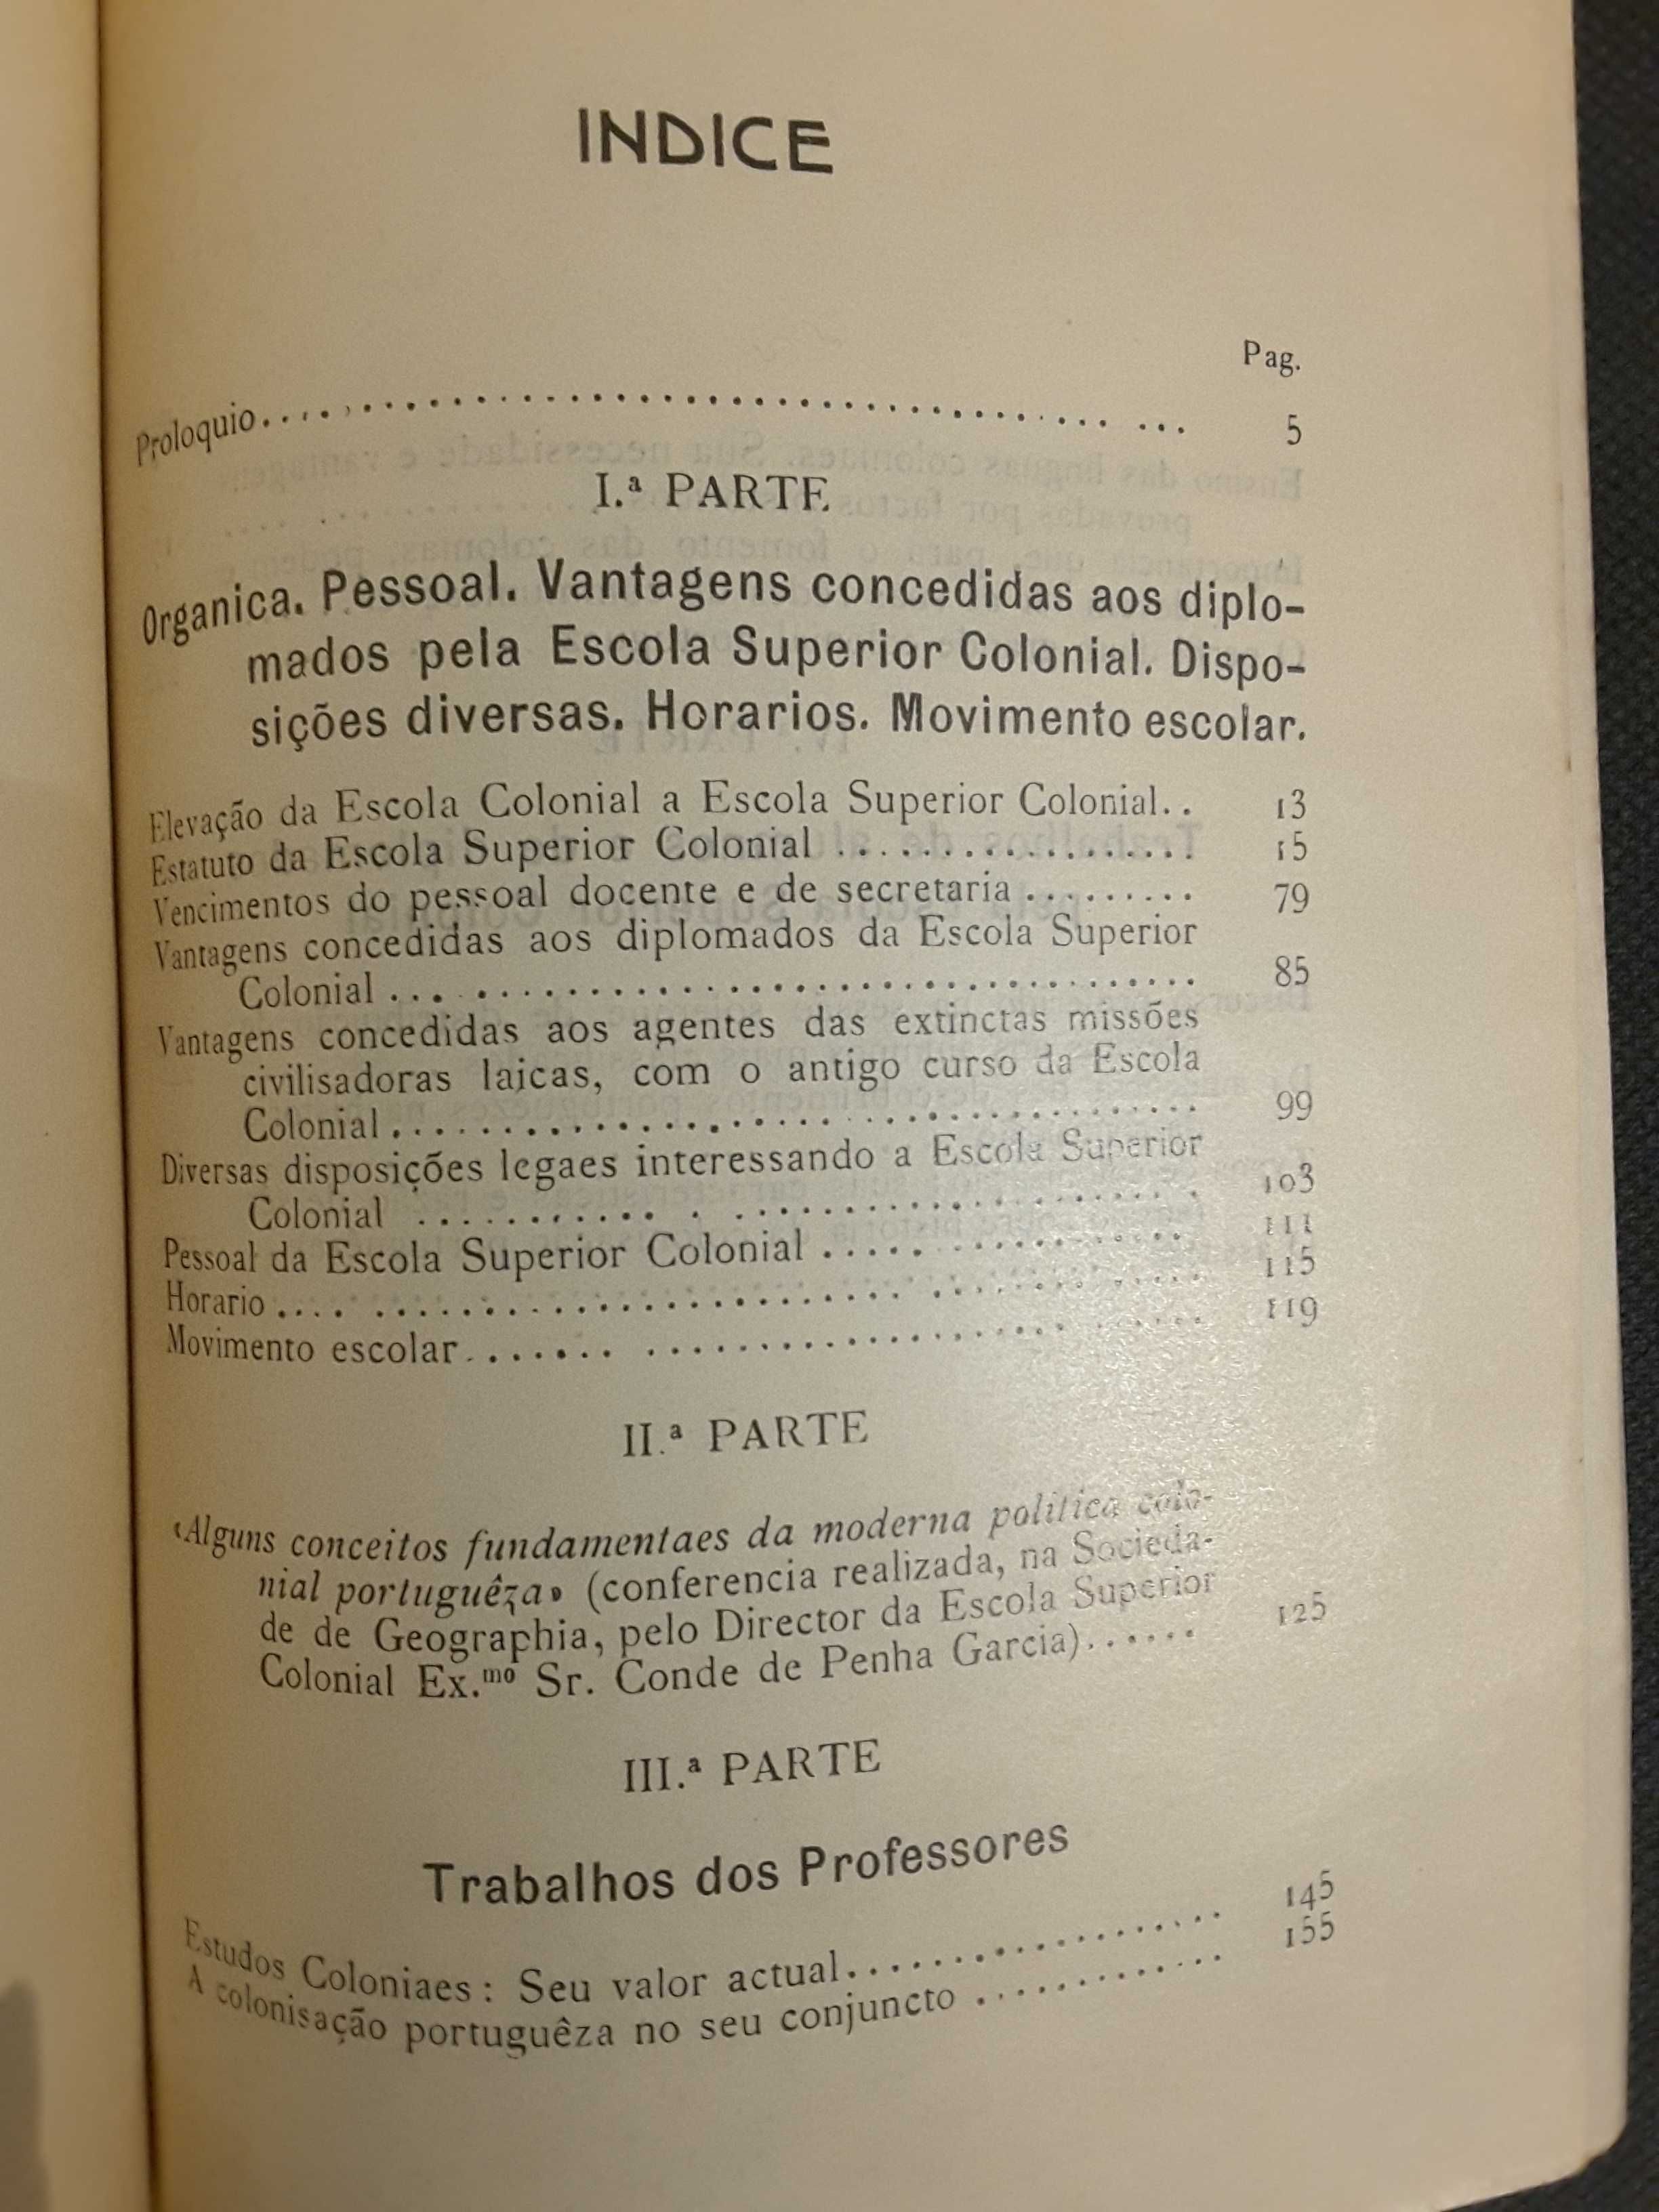 Anuários Coloniais (1930, 1944, 1945) / Boletim Geral do Ultramar